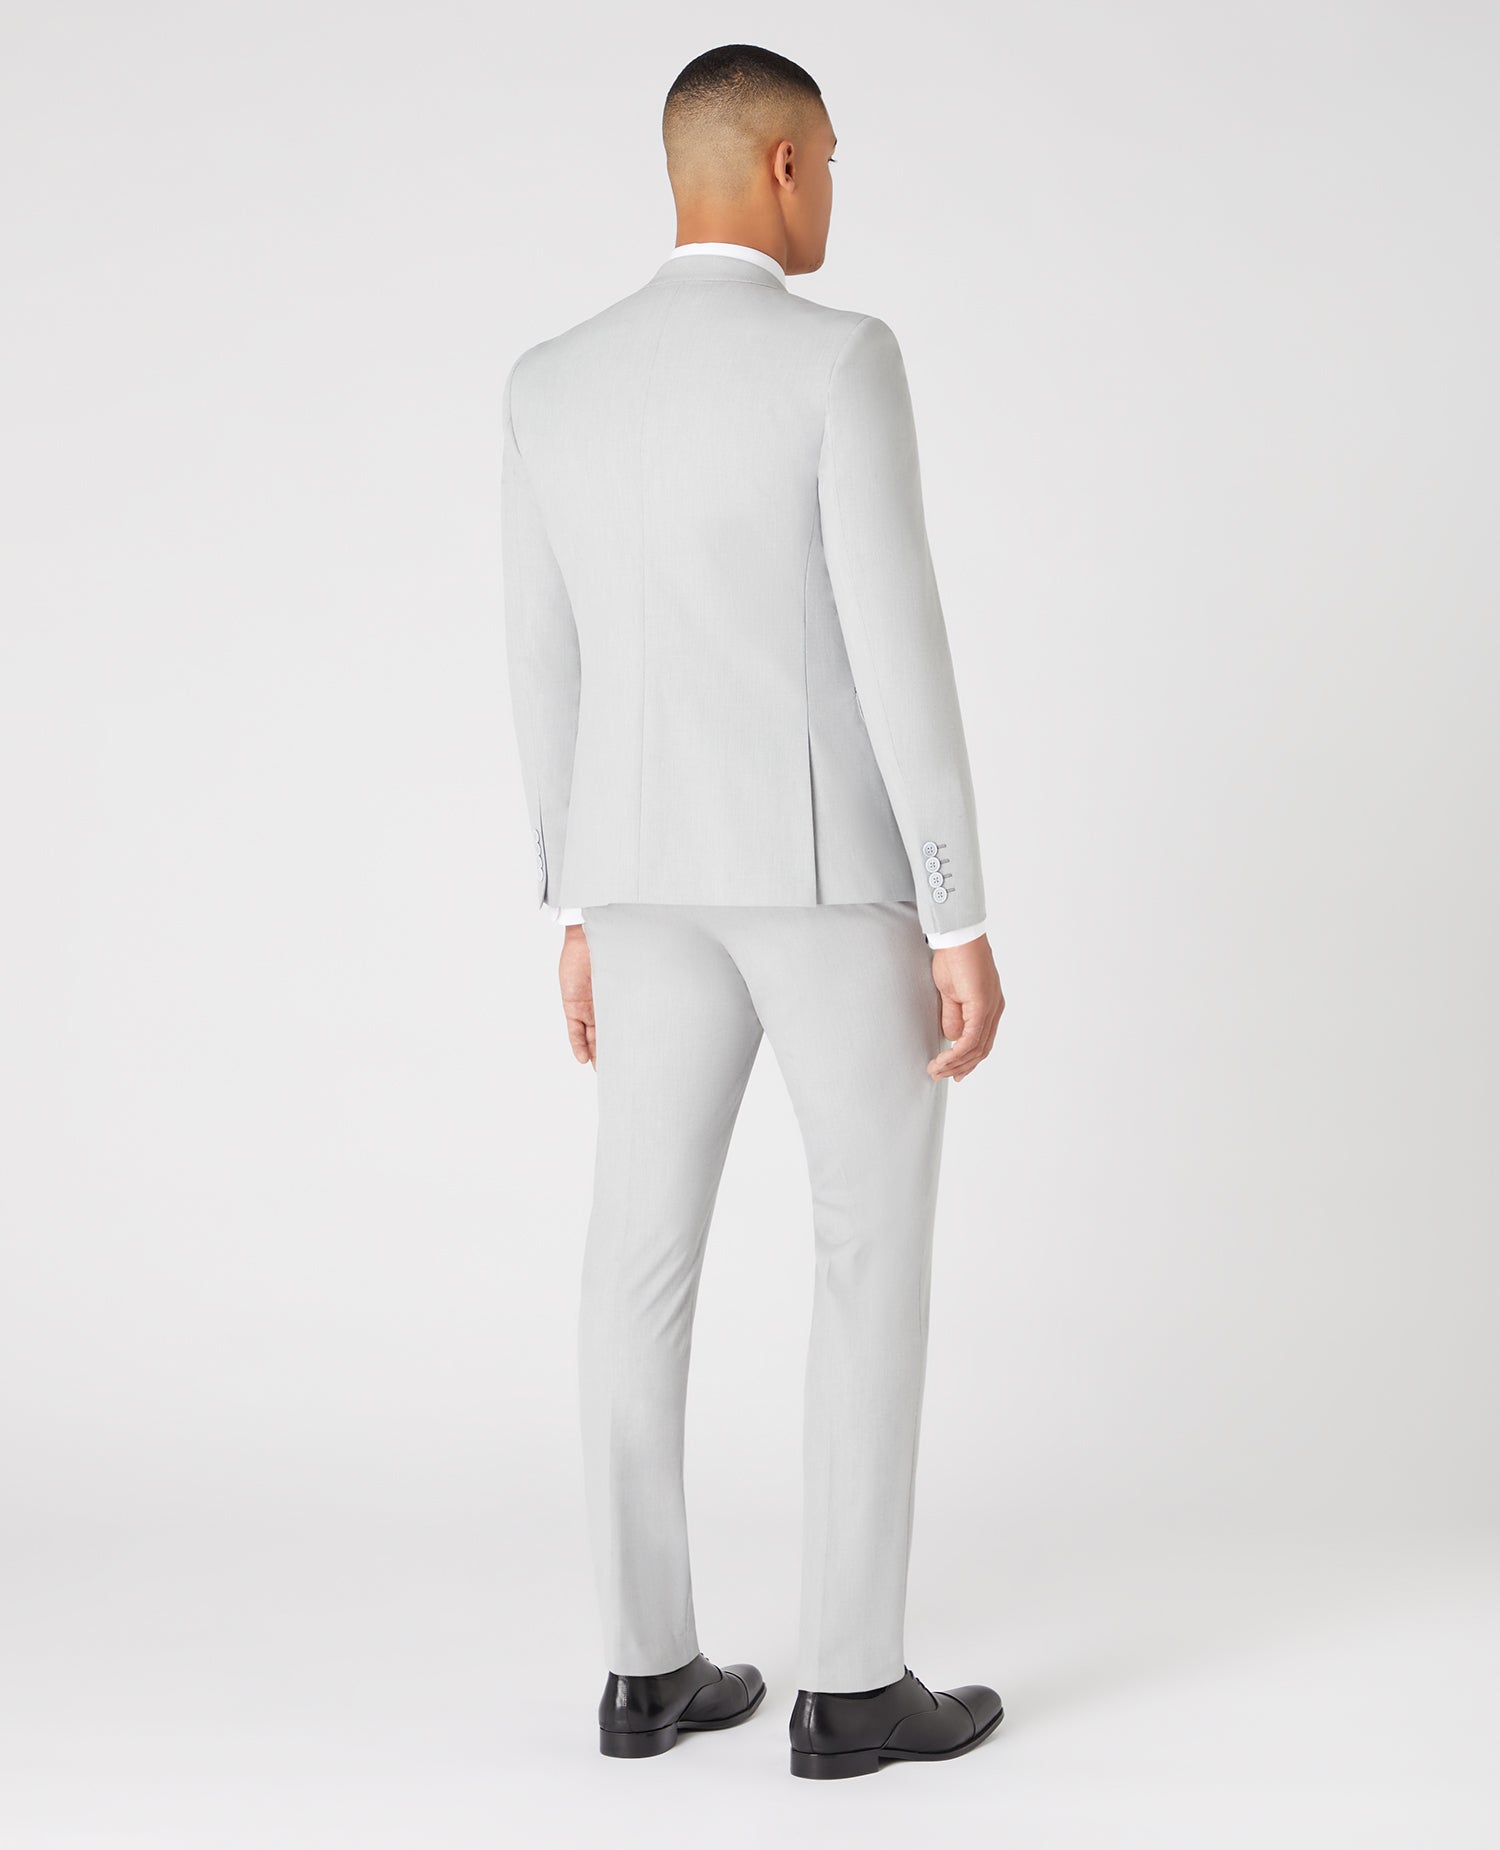 Remus Uomo Laurino Two Piece X-Slim Fit Suit - Matt O'Brien Fashions